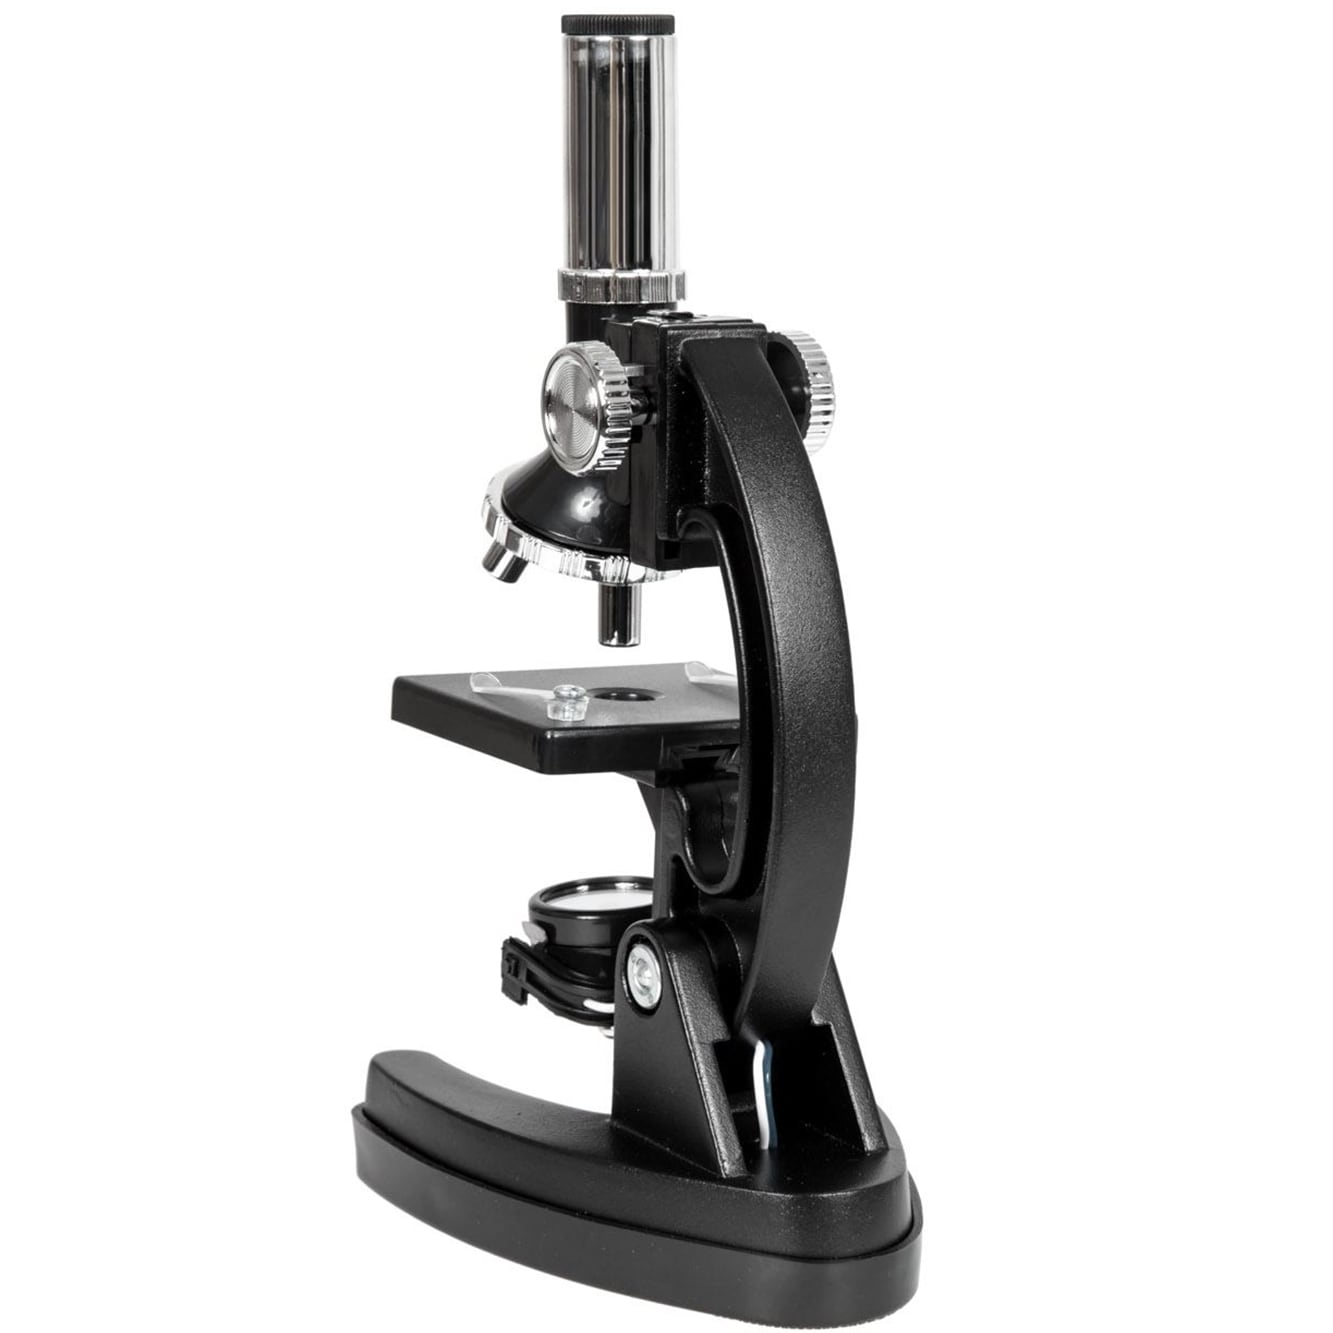 Mikroskop Opticon Student